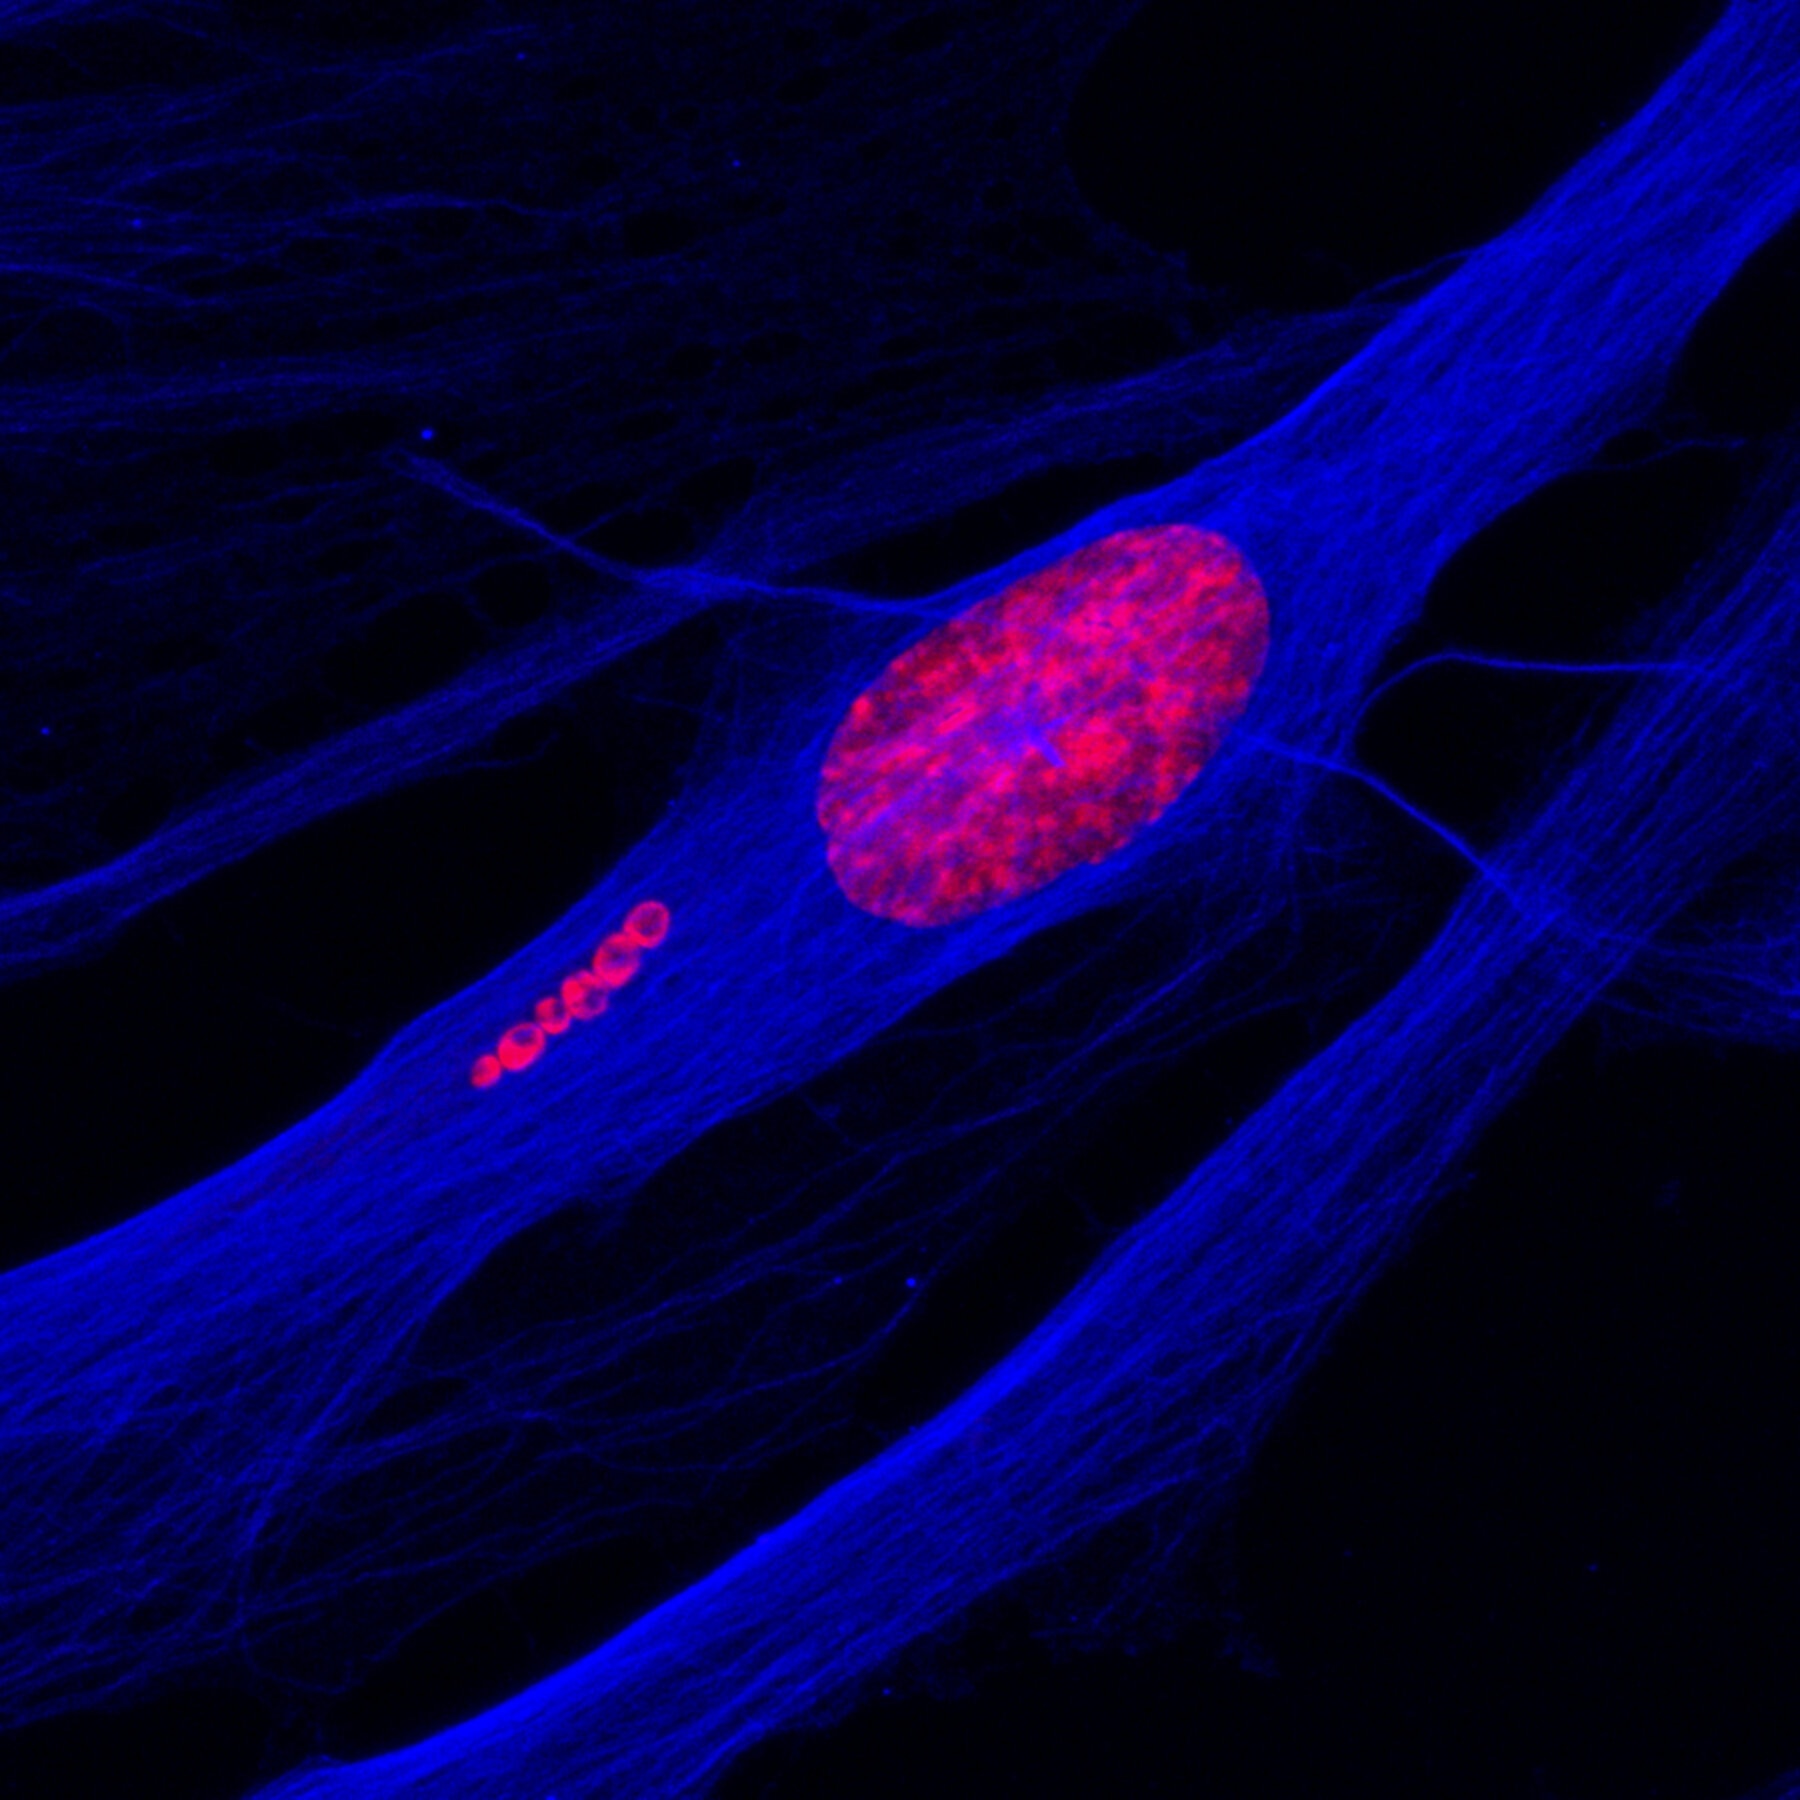 Se muestra una célula madre humana durante los primeros estadios del proceso de conversión en neurona. El ADN, en color rojo, y el esqueleto celular, en color azul, permiten observar seis partículas esféricas, que contienen ADN, alejándose del núcleo celular.